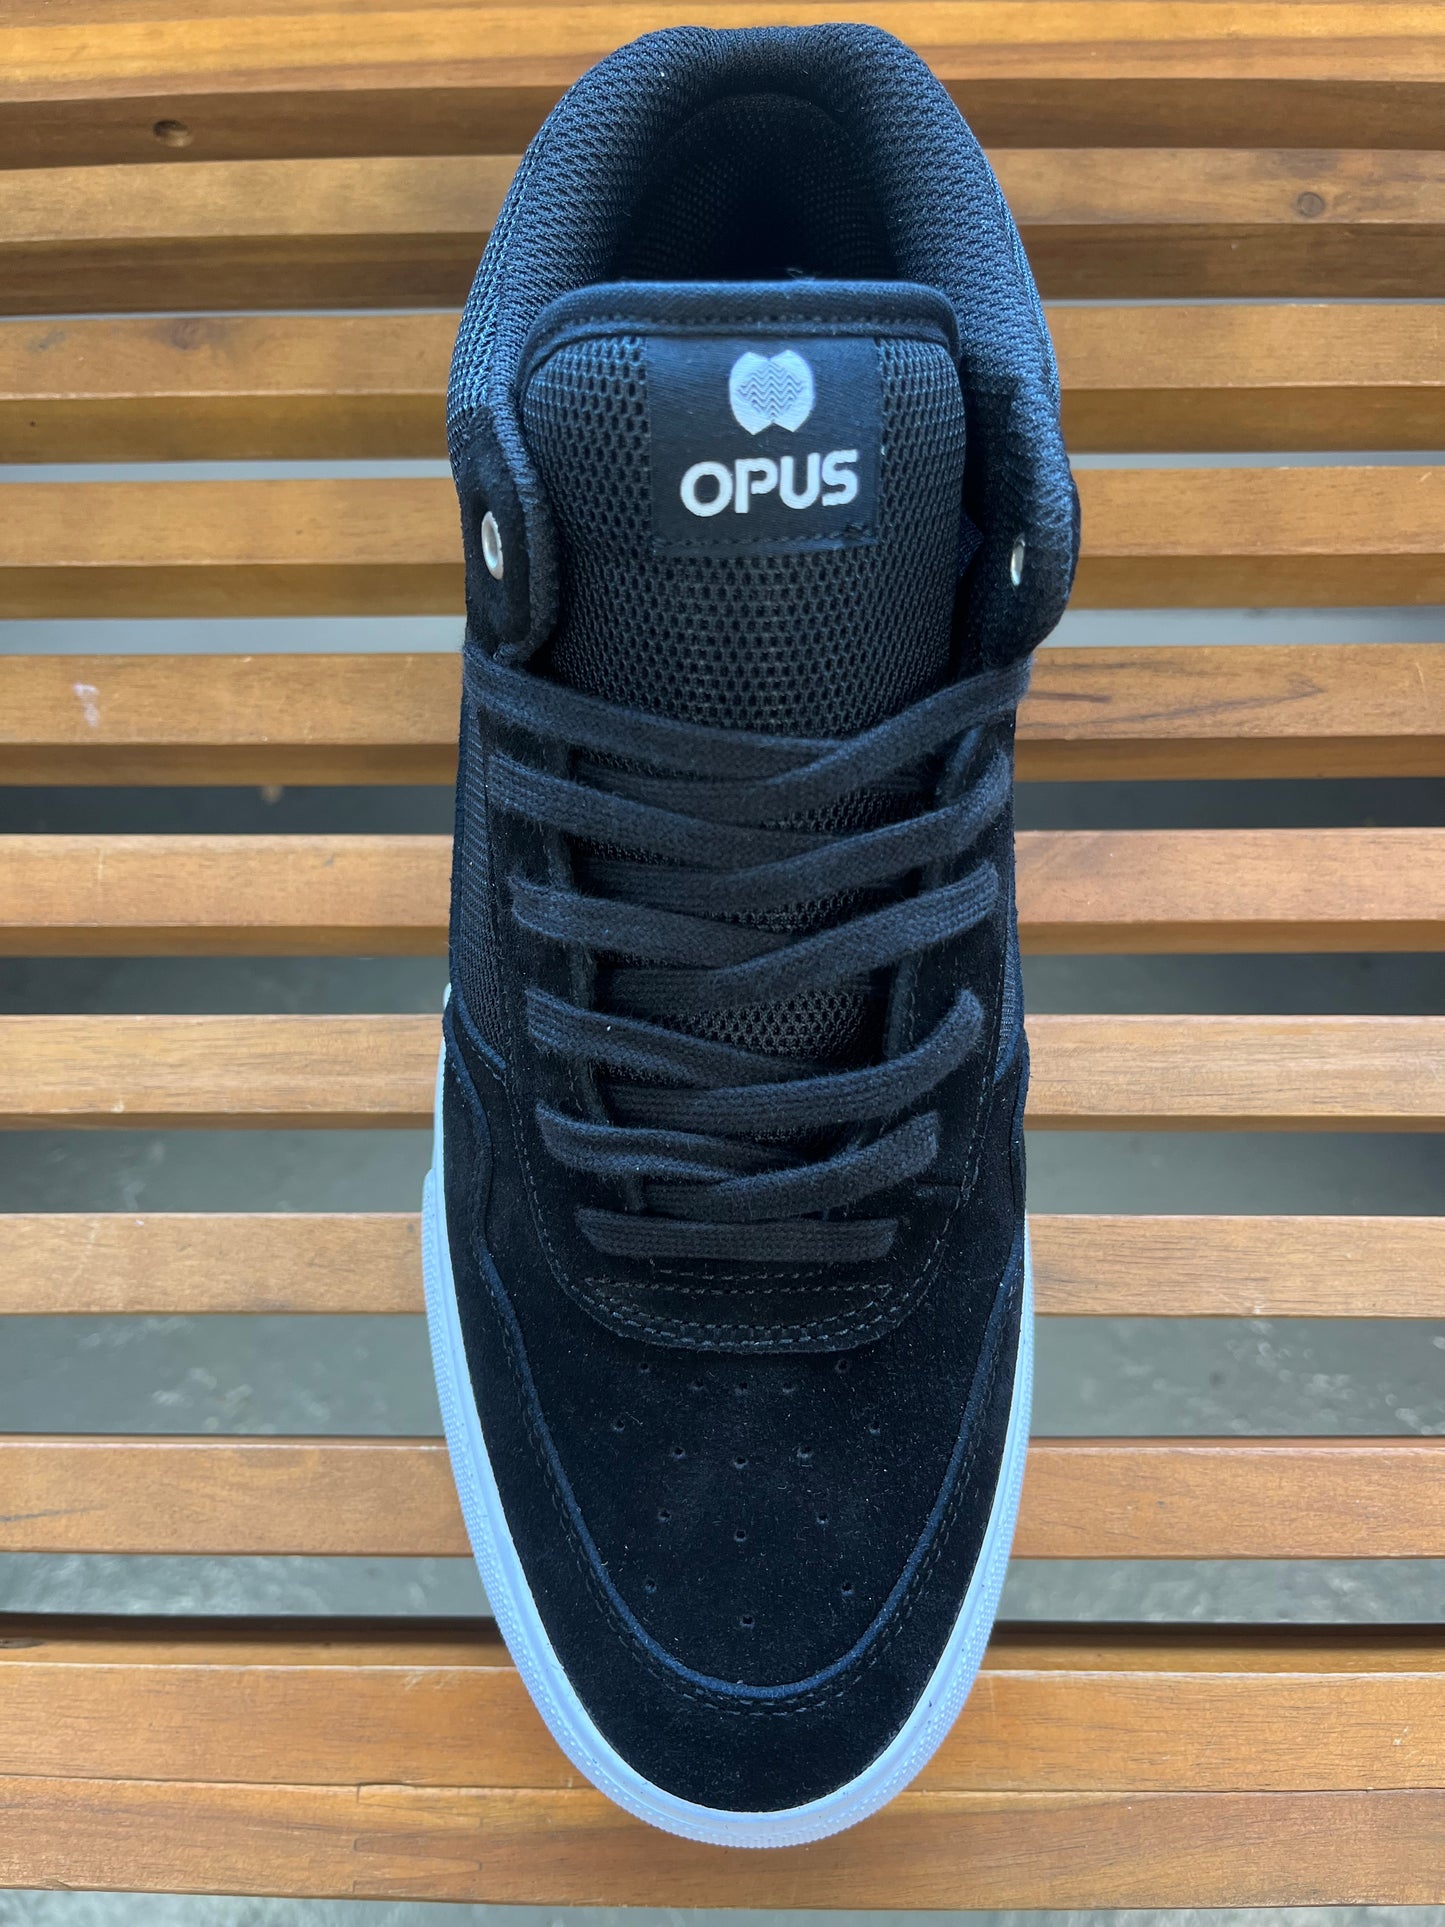 Opus Footwear Standard-Mid-Black-White